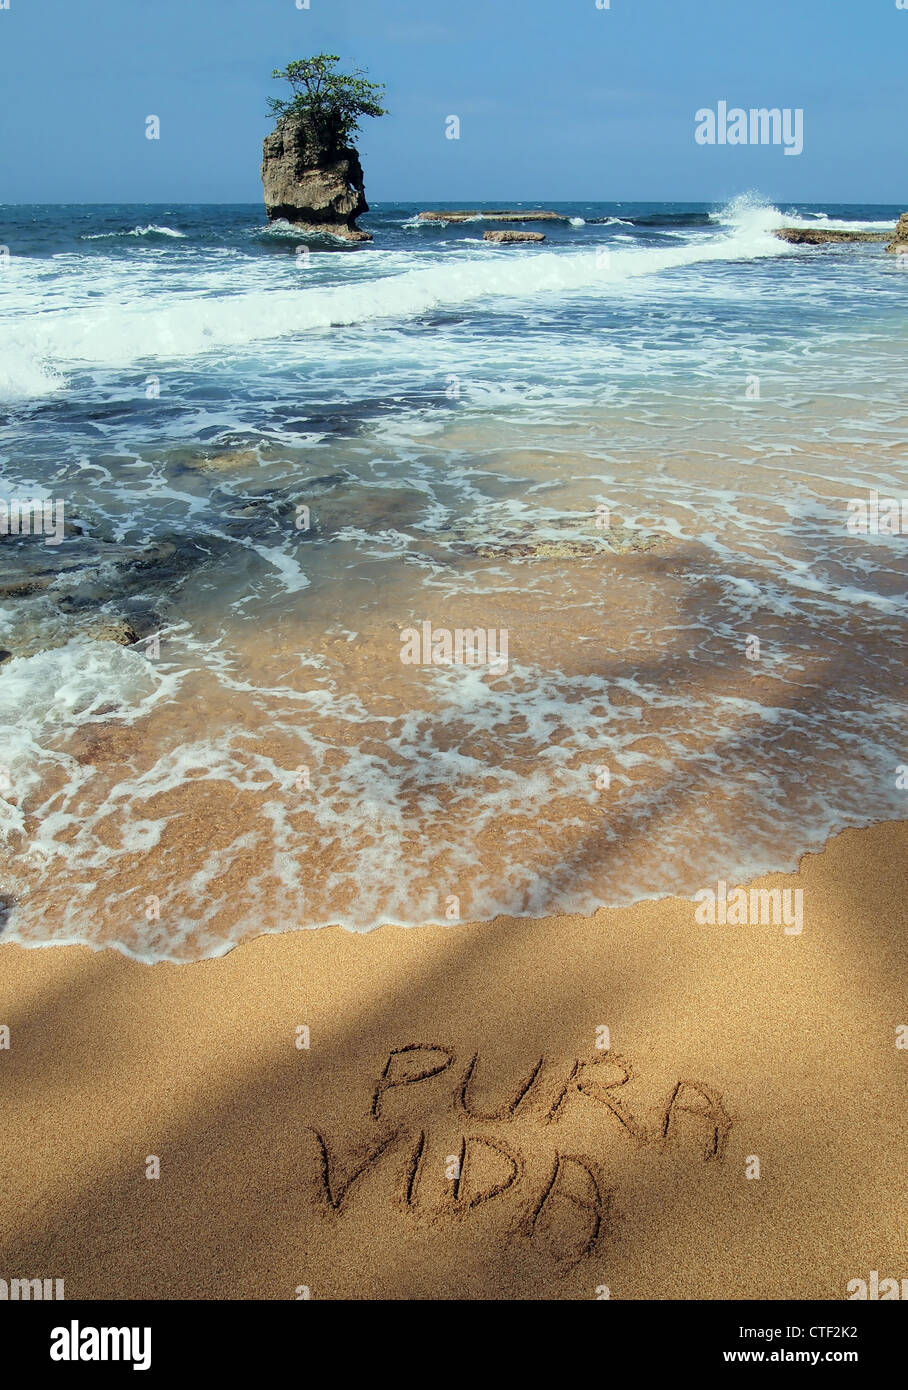 Die Worte "pura vida" in den Sand geschrieben am Meer an einem tropischen Strand mit einer felsigen Inselchen, Karibikküste von Costa Rica, Mittelamerika Stockfoto